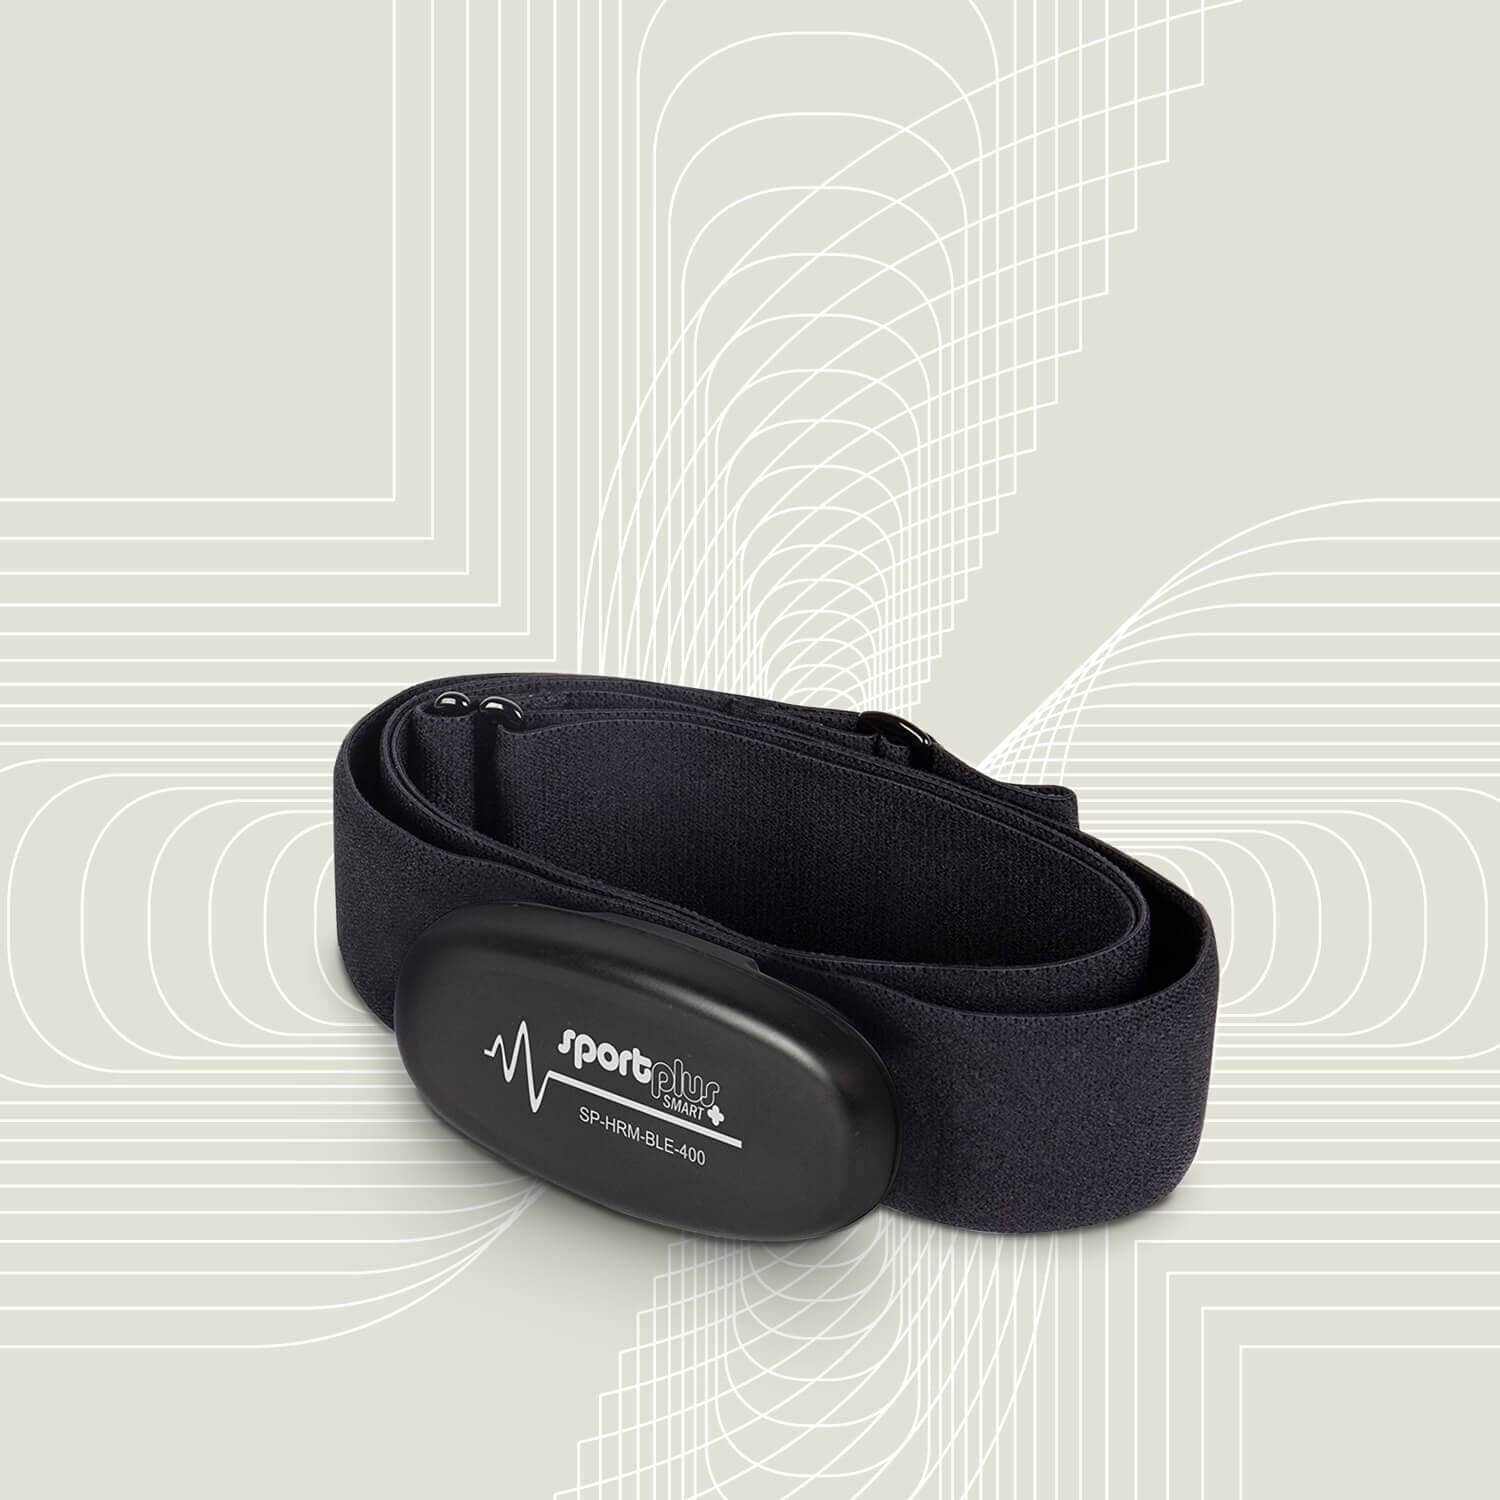 Uncodierter Herzfrequenz-Brustgurt mit Bluetooth 4.0, ANT+ oder 5,3 kHz SP-HRM-BLE-400 SportPlus 